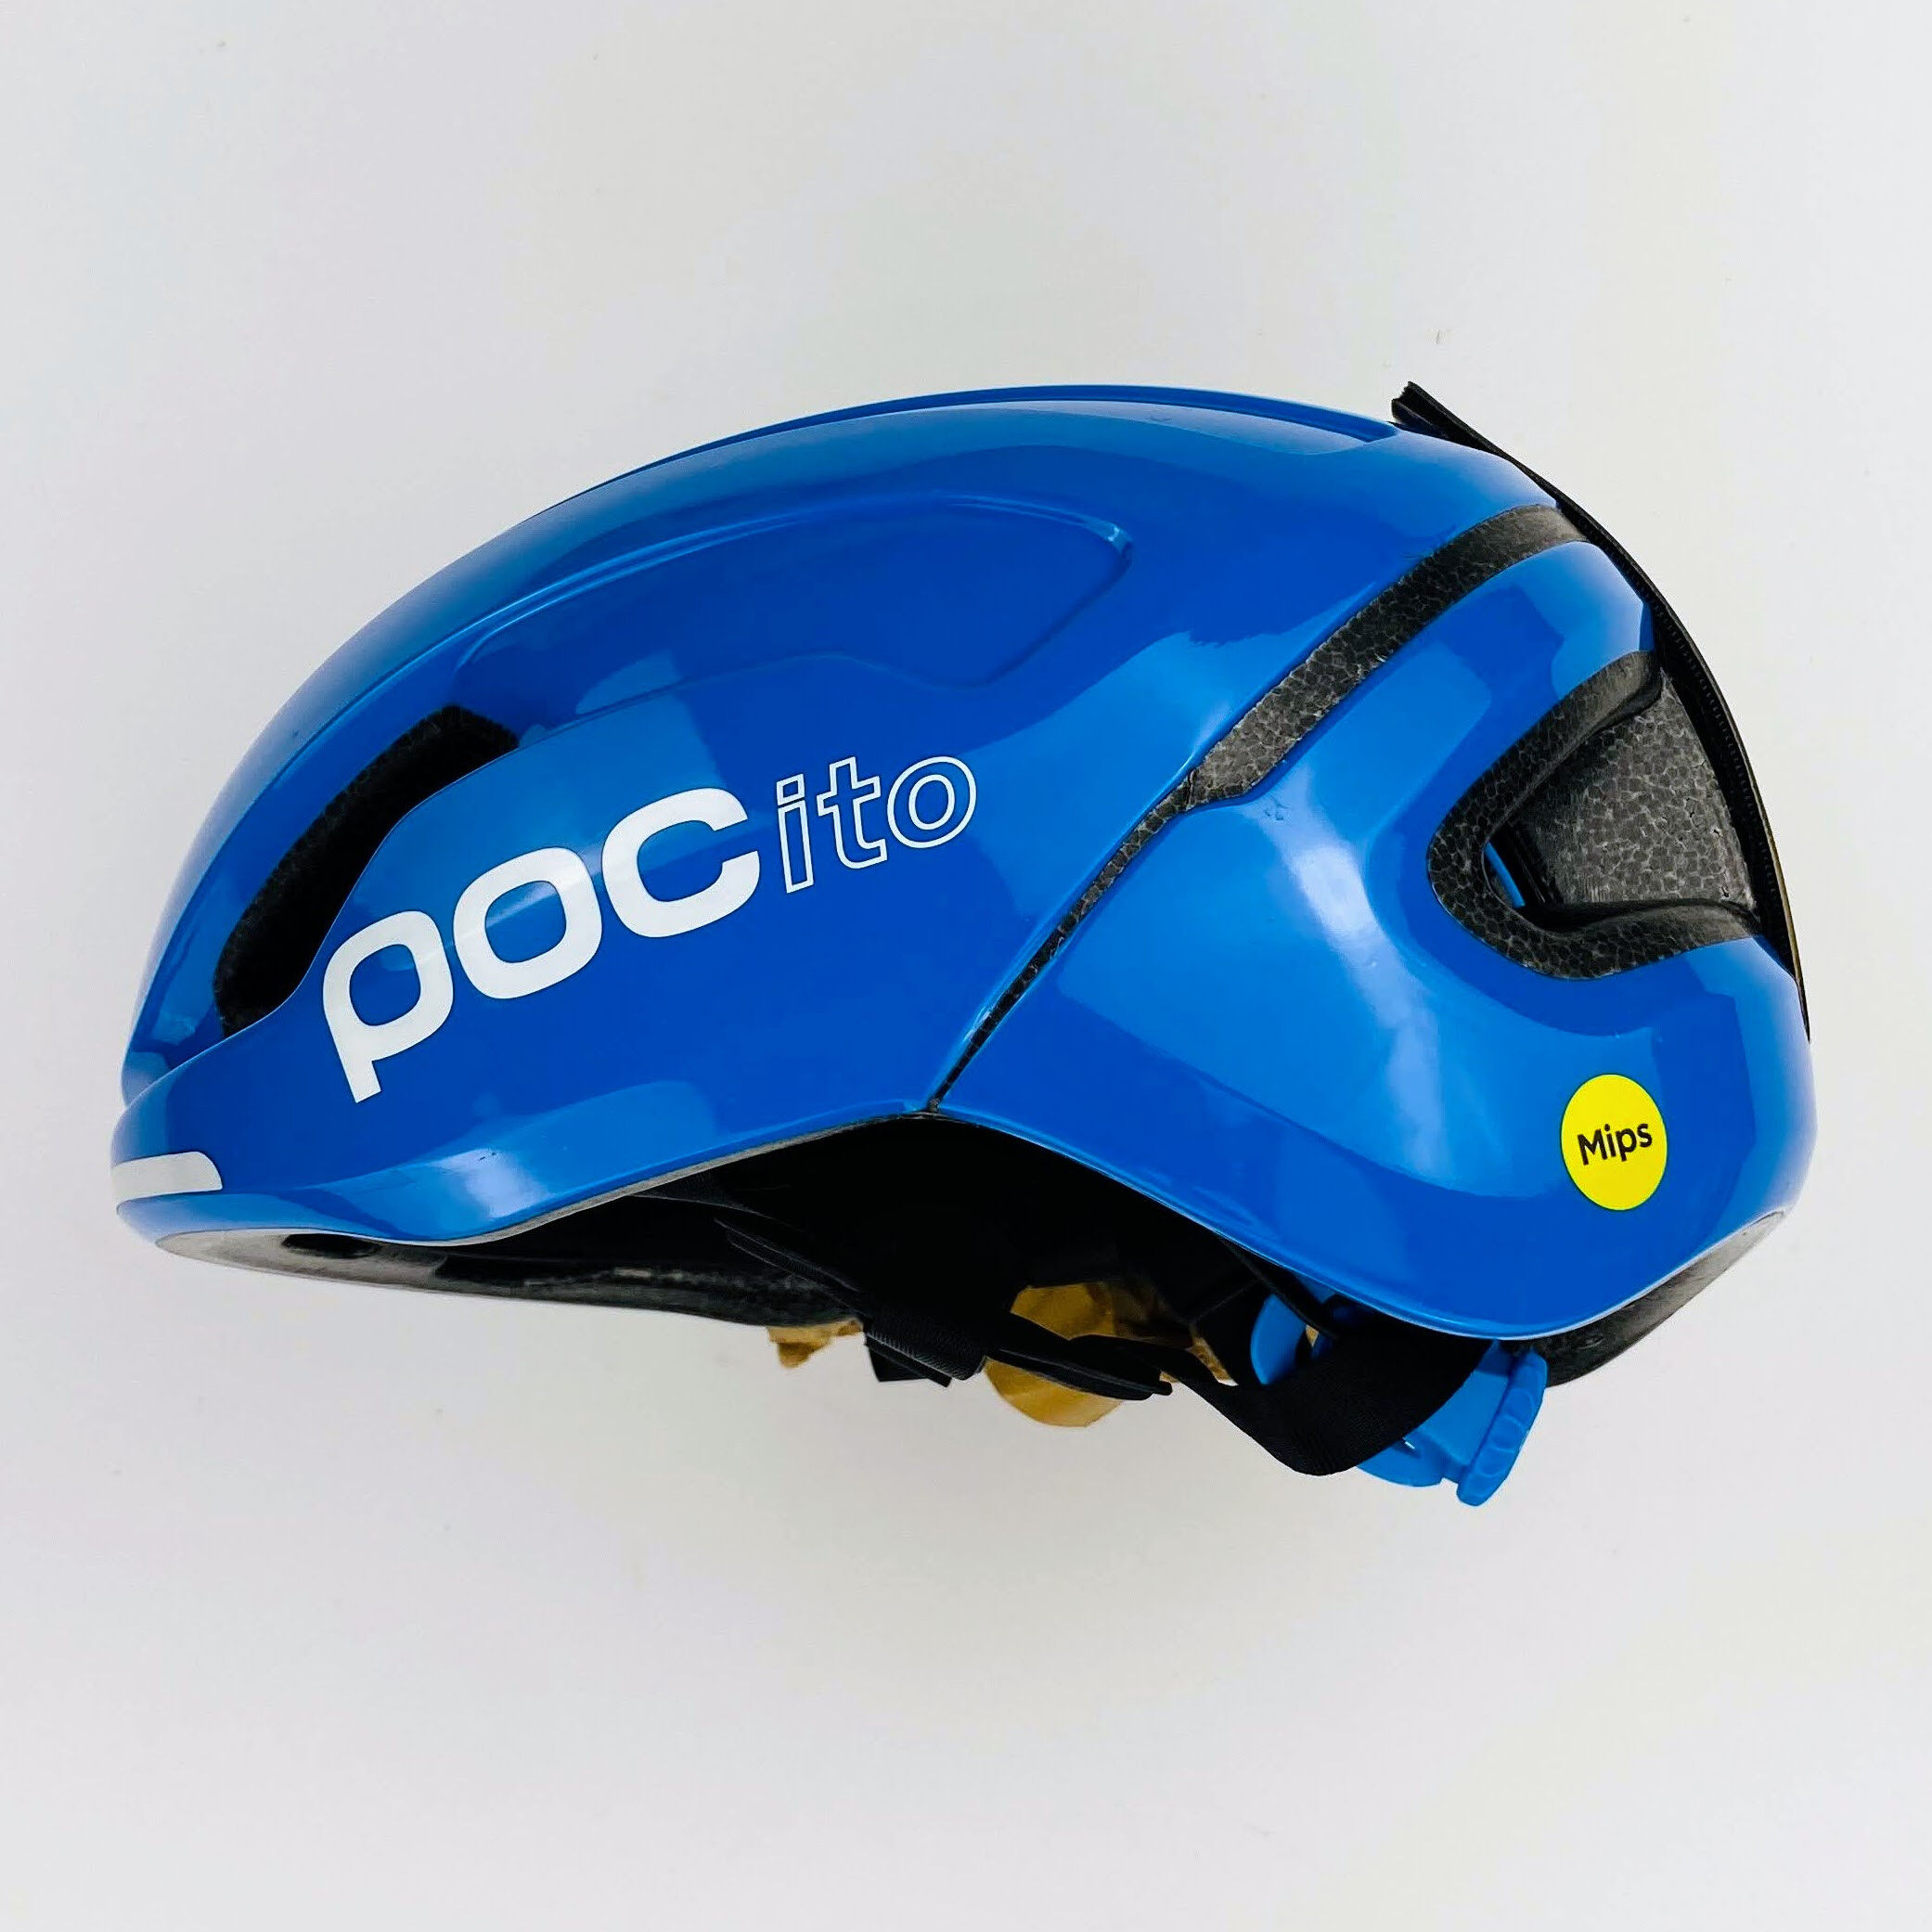 Poc Pocito Omne MIPS - Segunda mano Casco de ciclismo - Niños - Azul - 48-52 cm | Hardloop